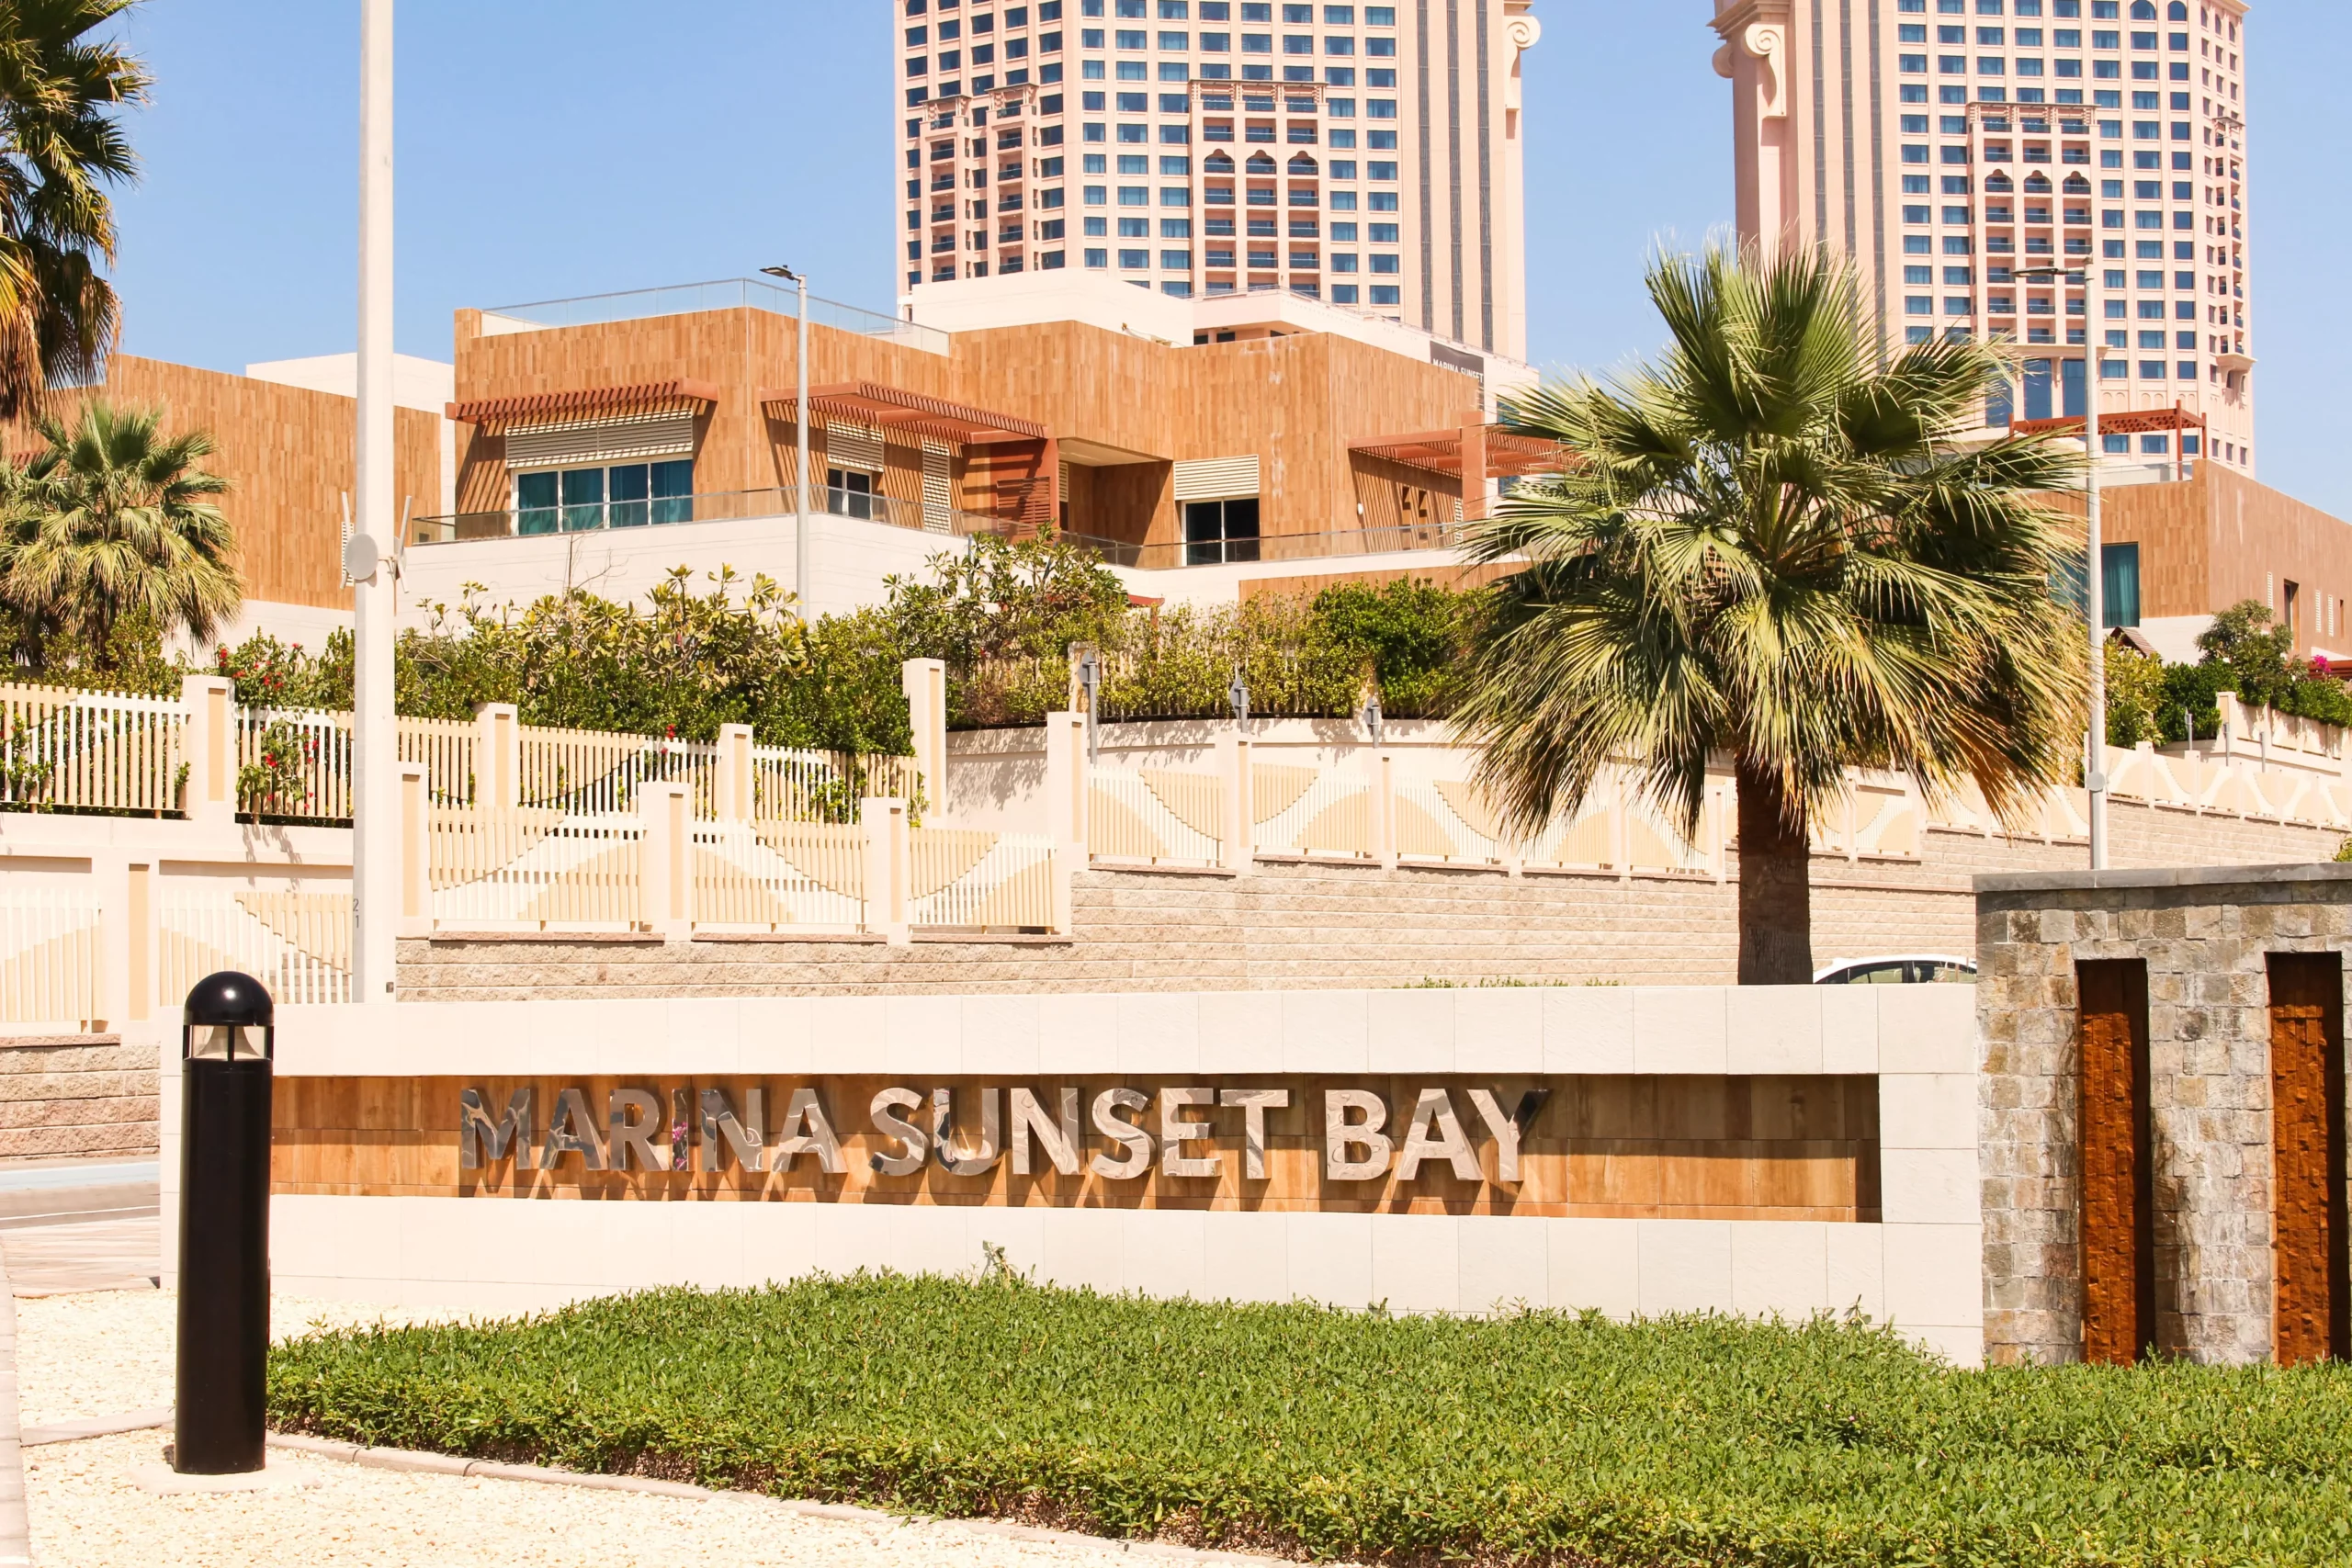 Image of Marina Property Management of Marina Sunset Bay